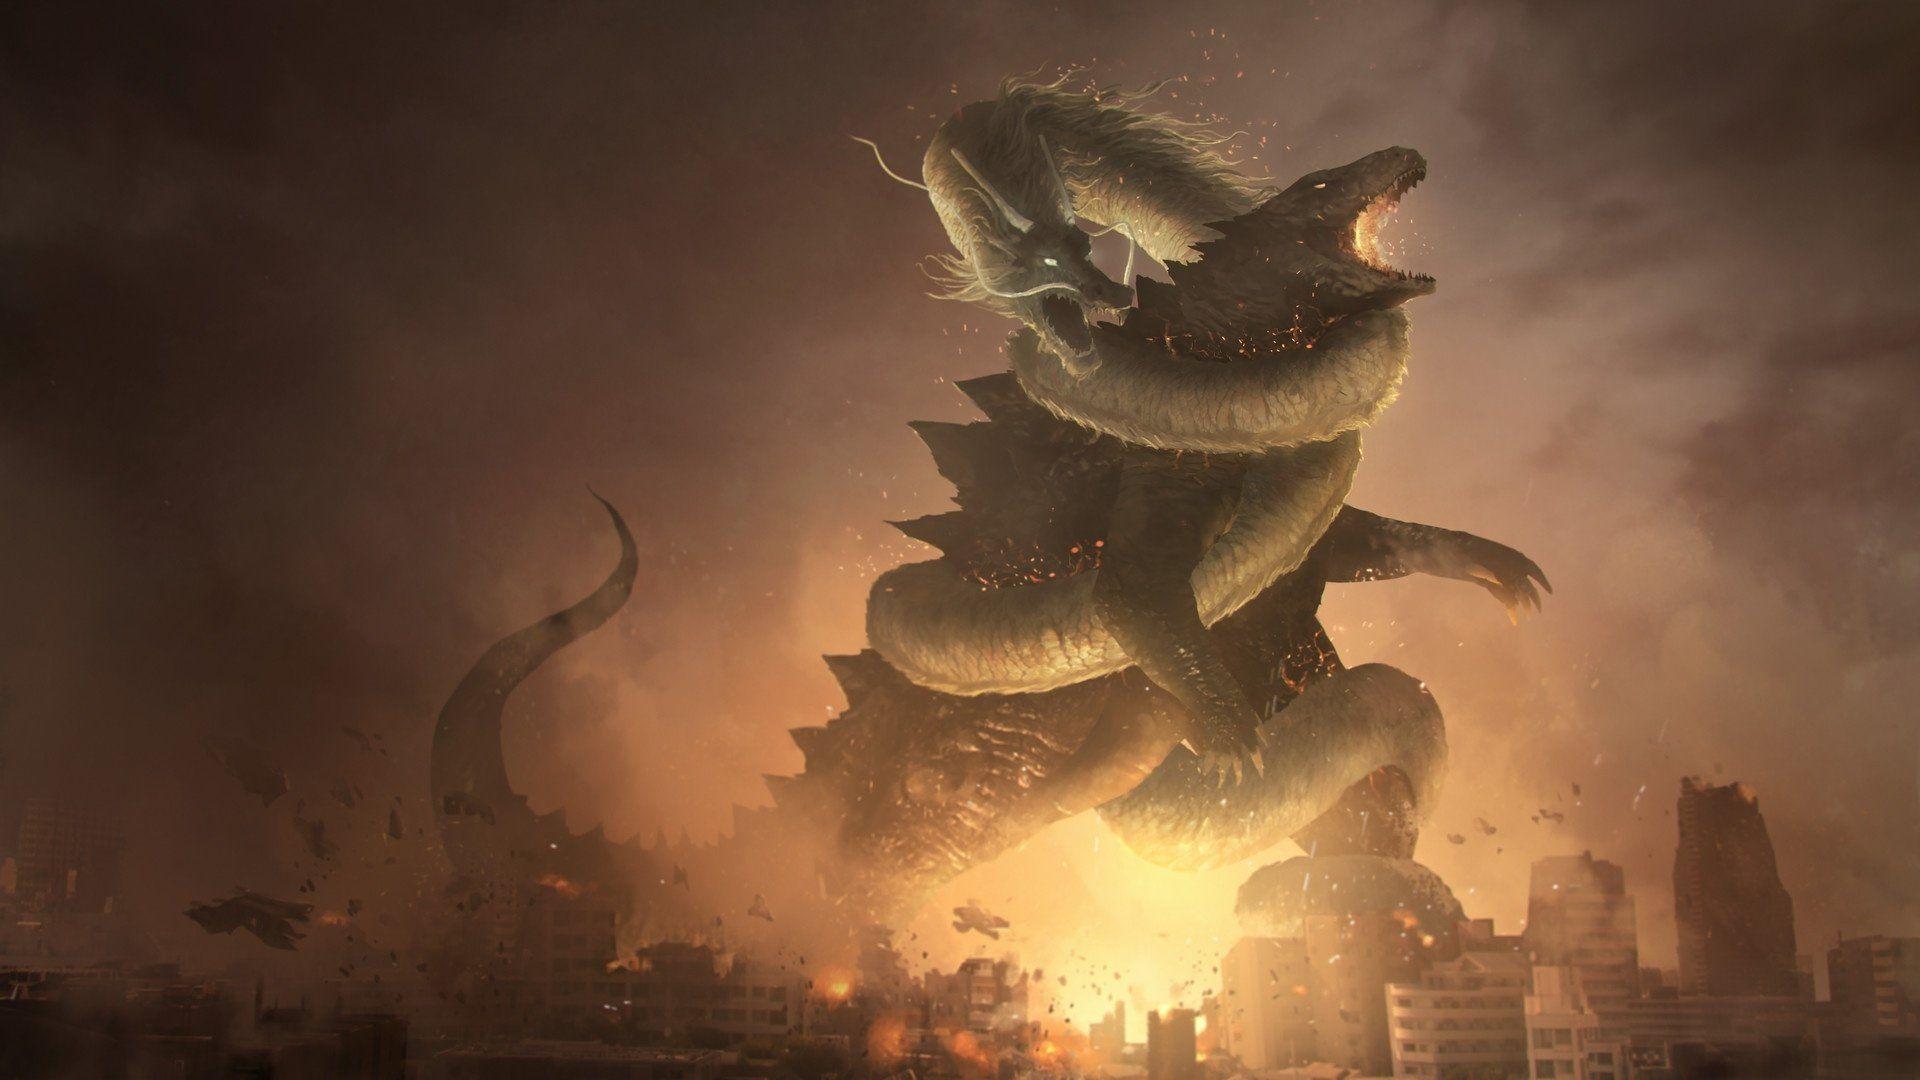 Godzilla Kaiju Wallpapers - Top Free Godzilla Kaiju ...